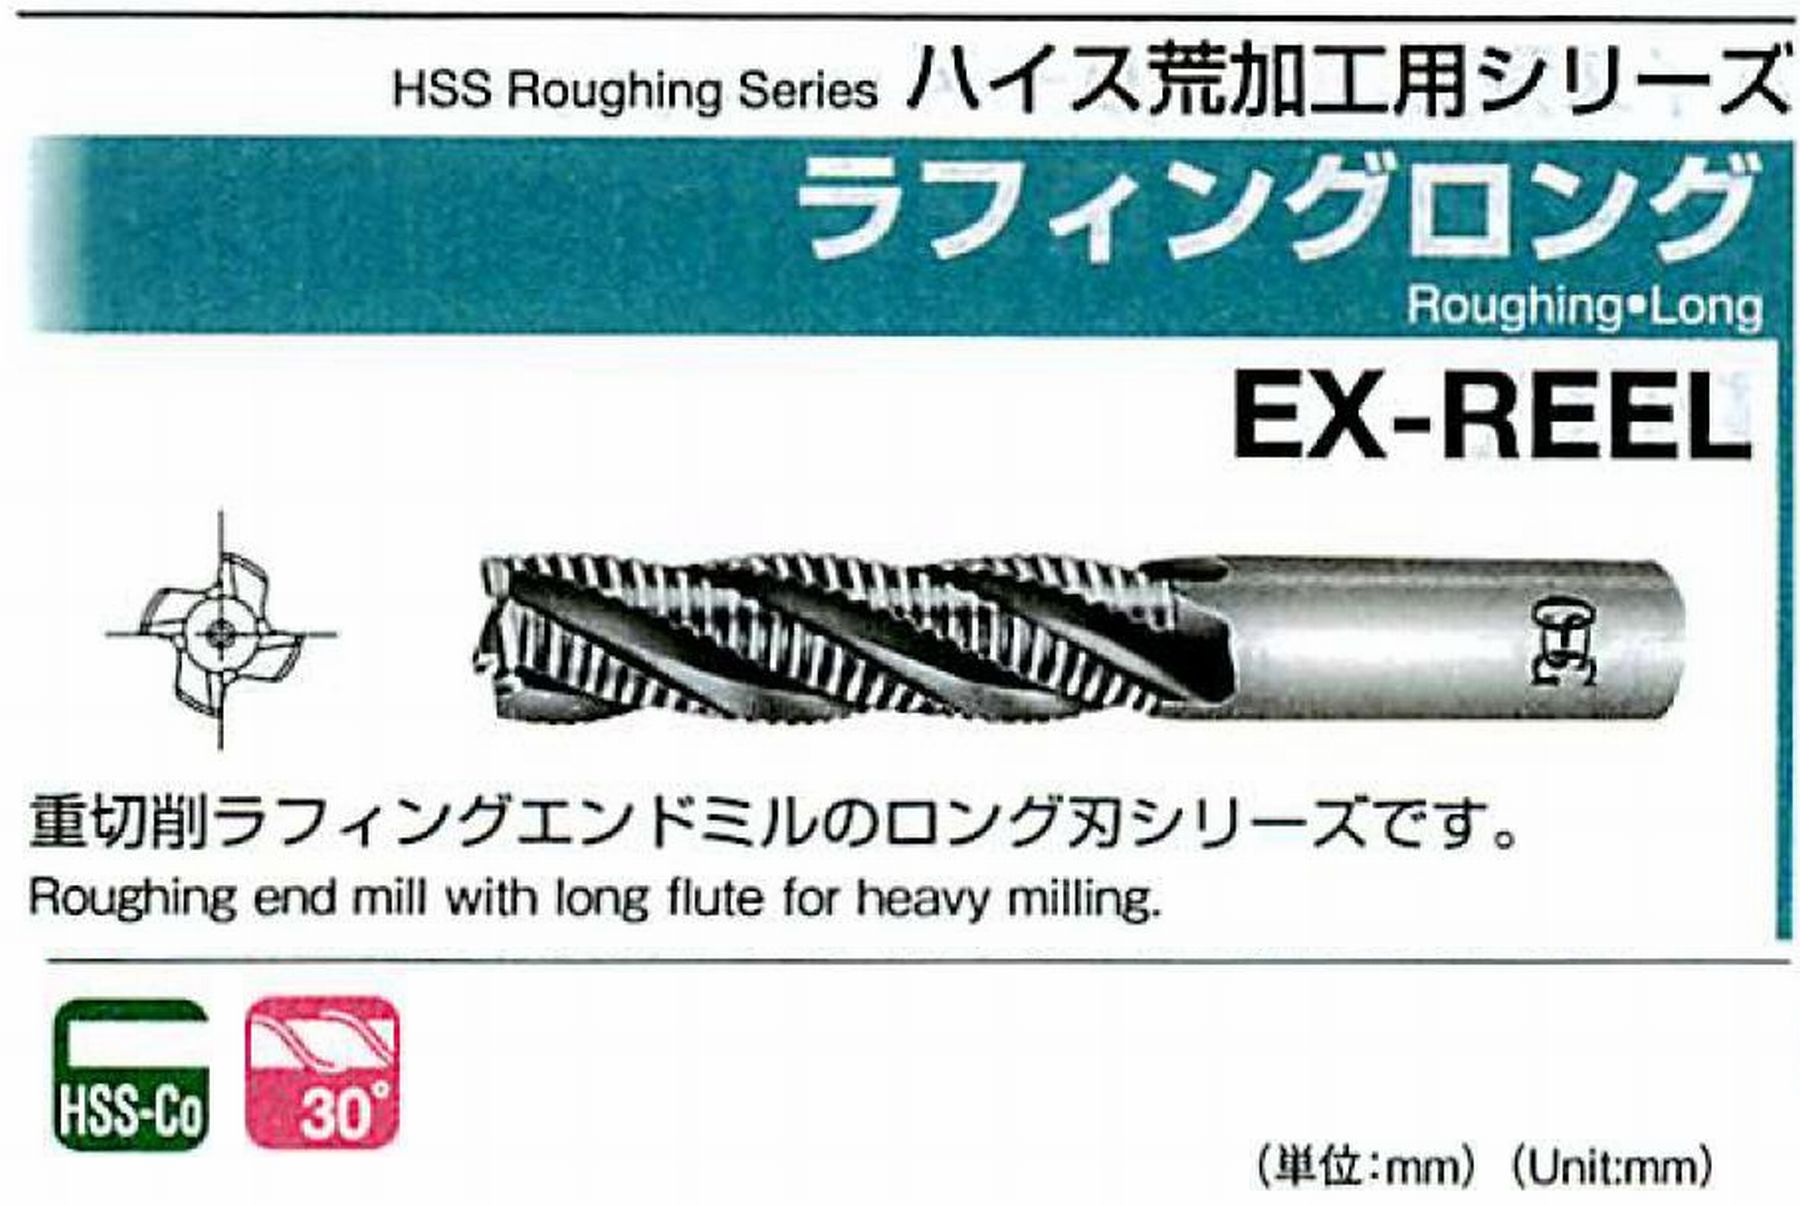 オーエスジー/OSG ラフィング ロング EX-REEL 外径47 全長227 刃長125 シャンク径42mm 刃数6